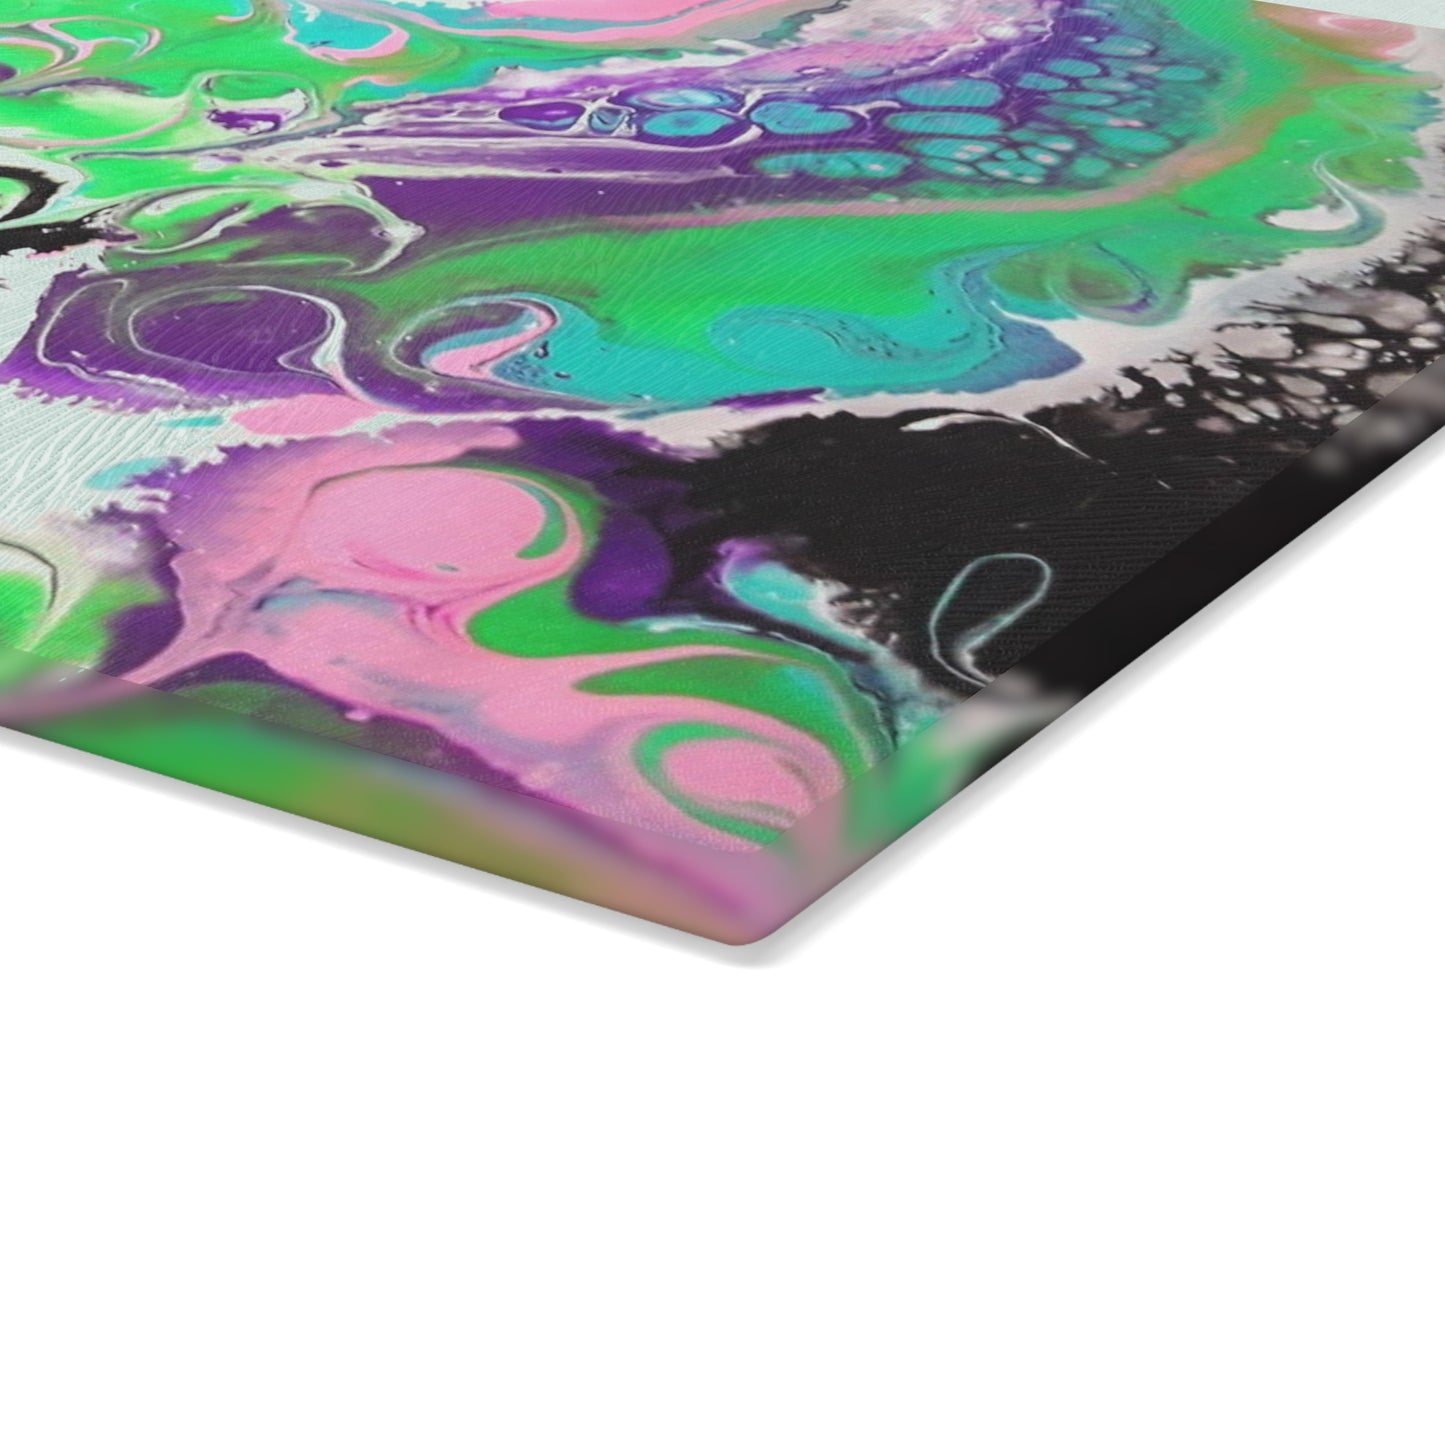 ARTZIRA DESIGNER Glass Cutting Board-Colorful Geometric Wave Design -2 Sizes